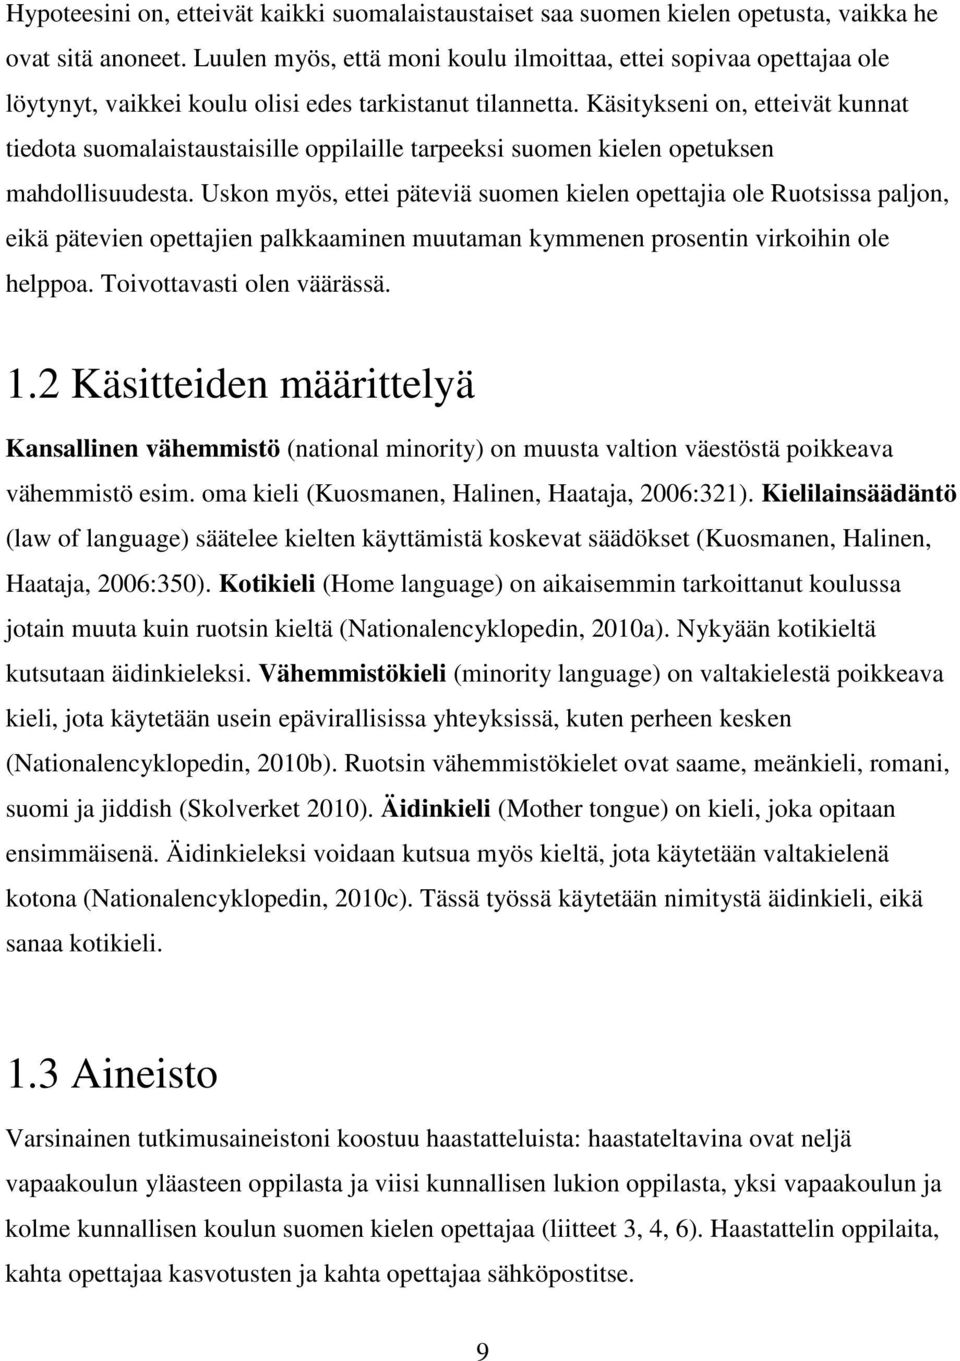 Käsitykseni on, etteivät kunnat tiedota suomalaistaustaisille oppilaille tarpeeksi suomen kielen opetuksen mahdollisuudesta.